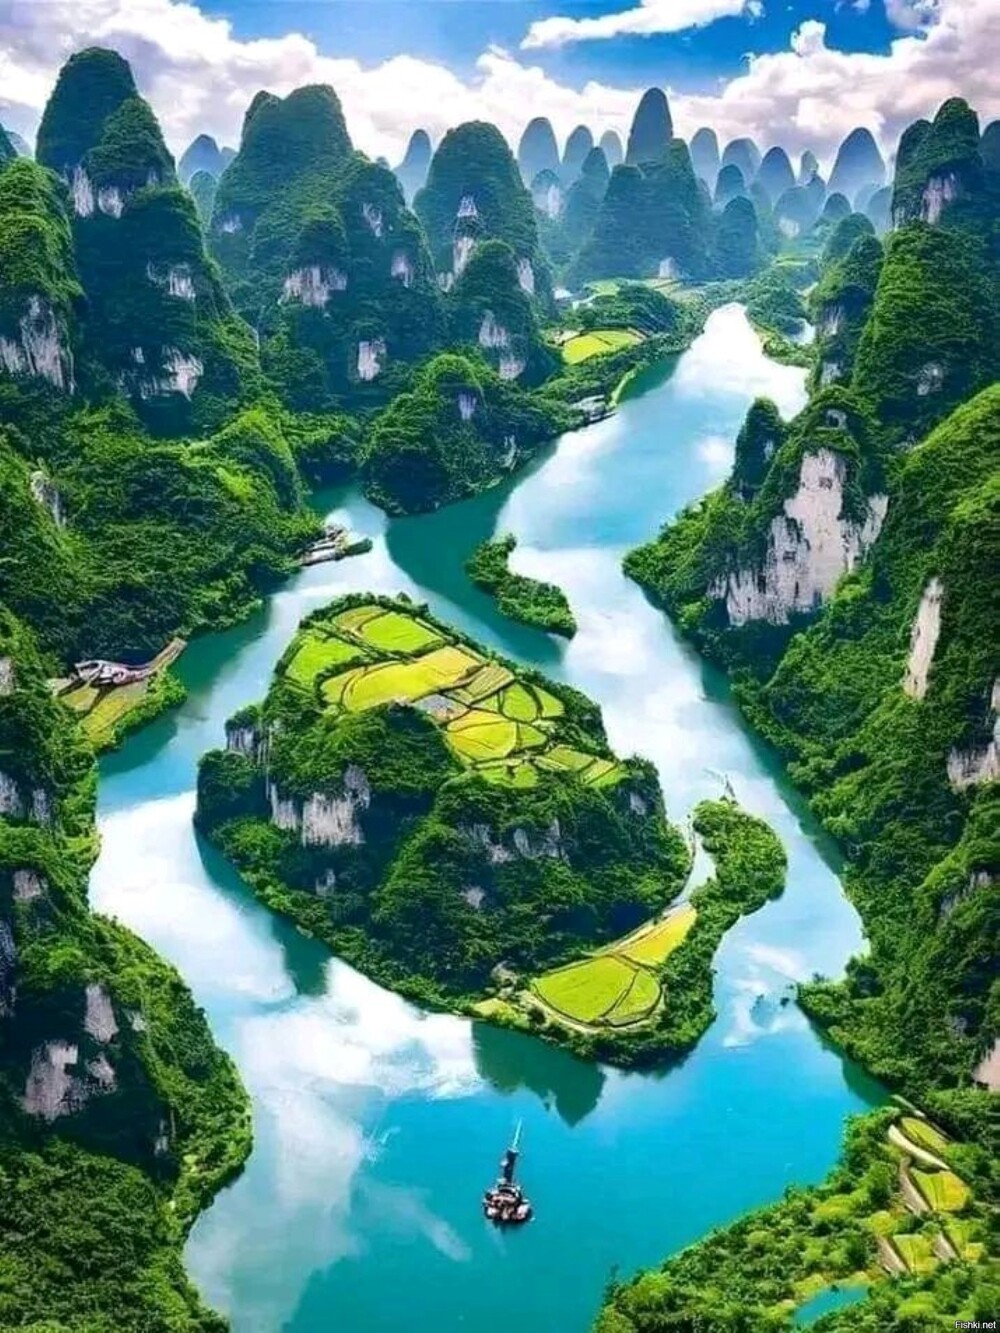 Горная система Наньлин на юго-востоке Китая, разделяющая бассейны рек Янцзы и...